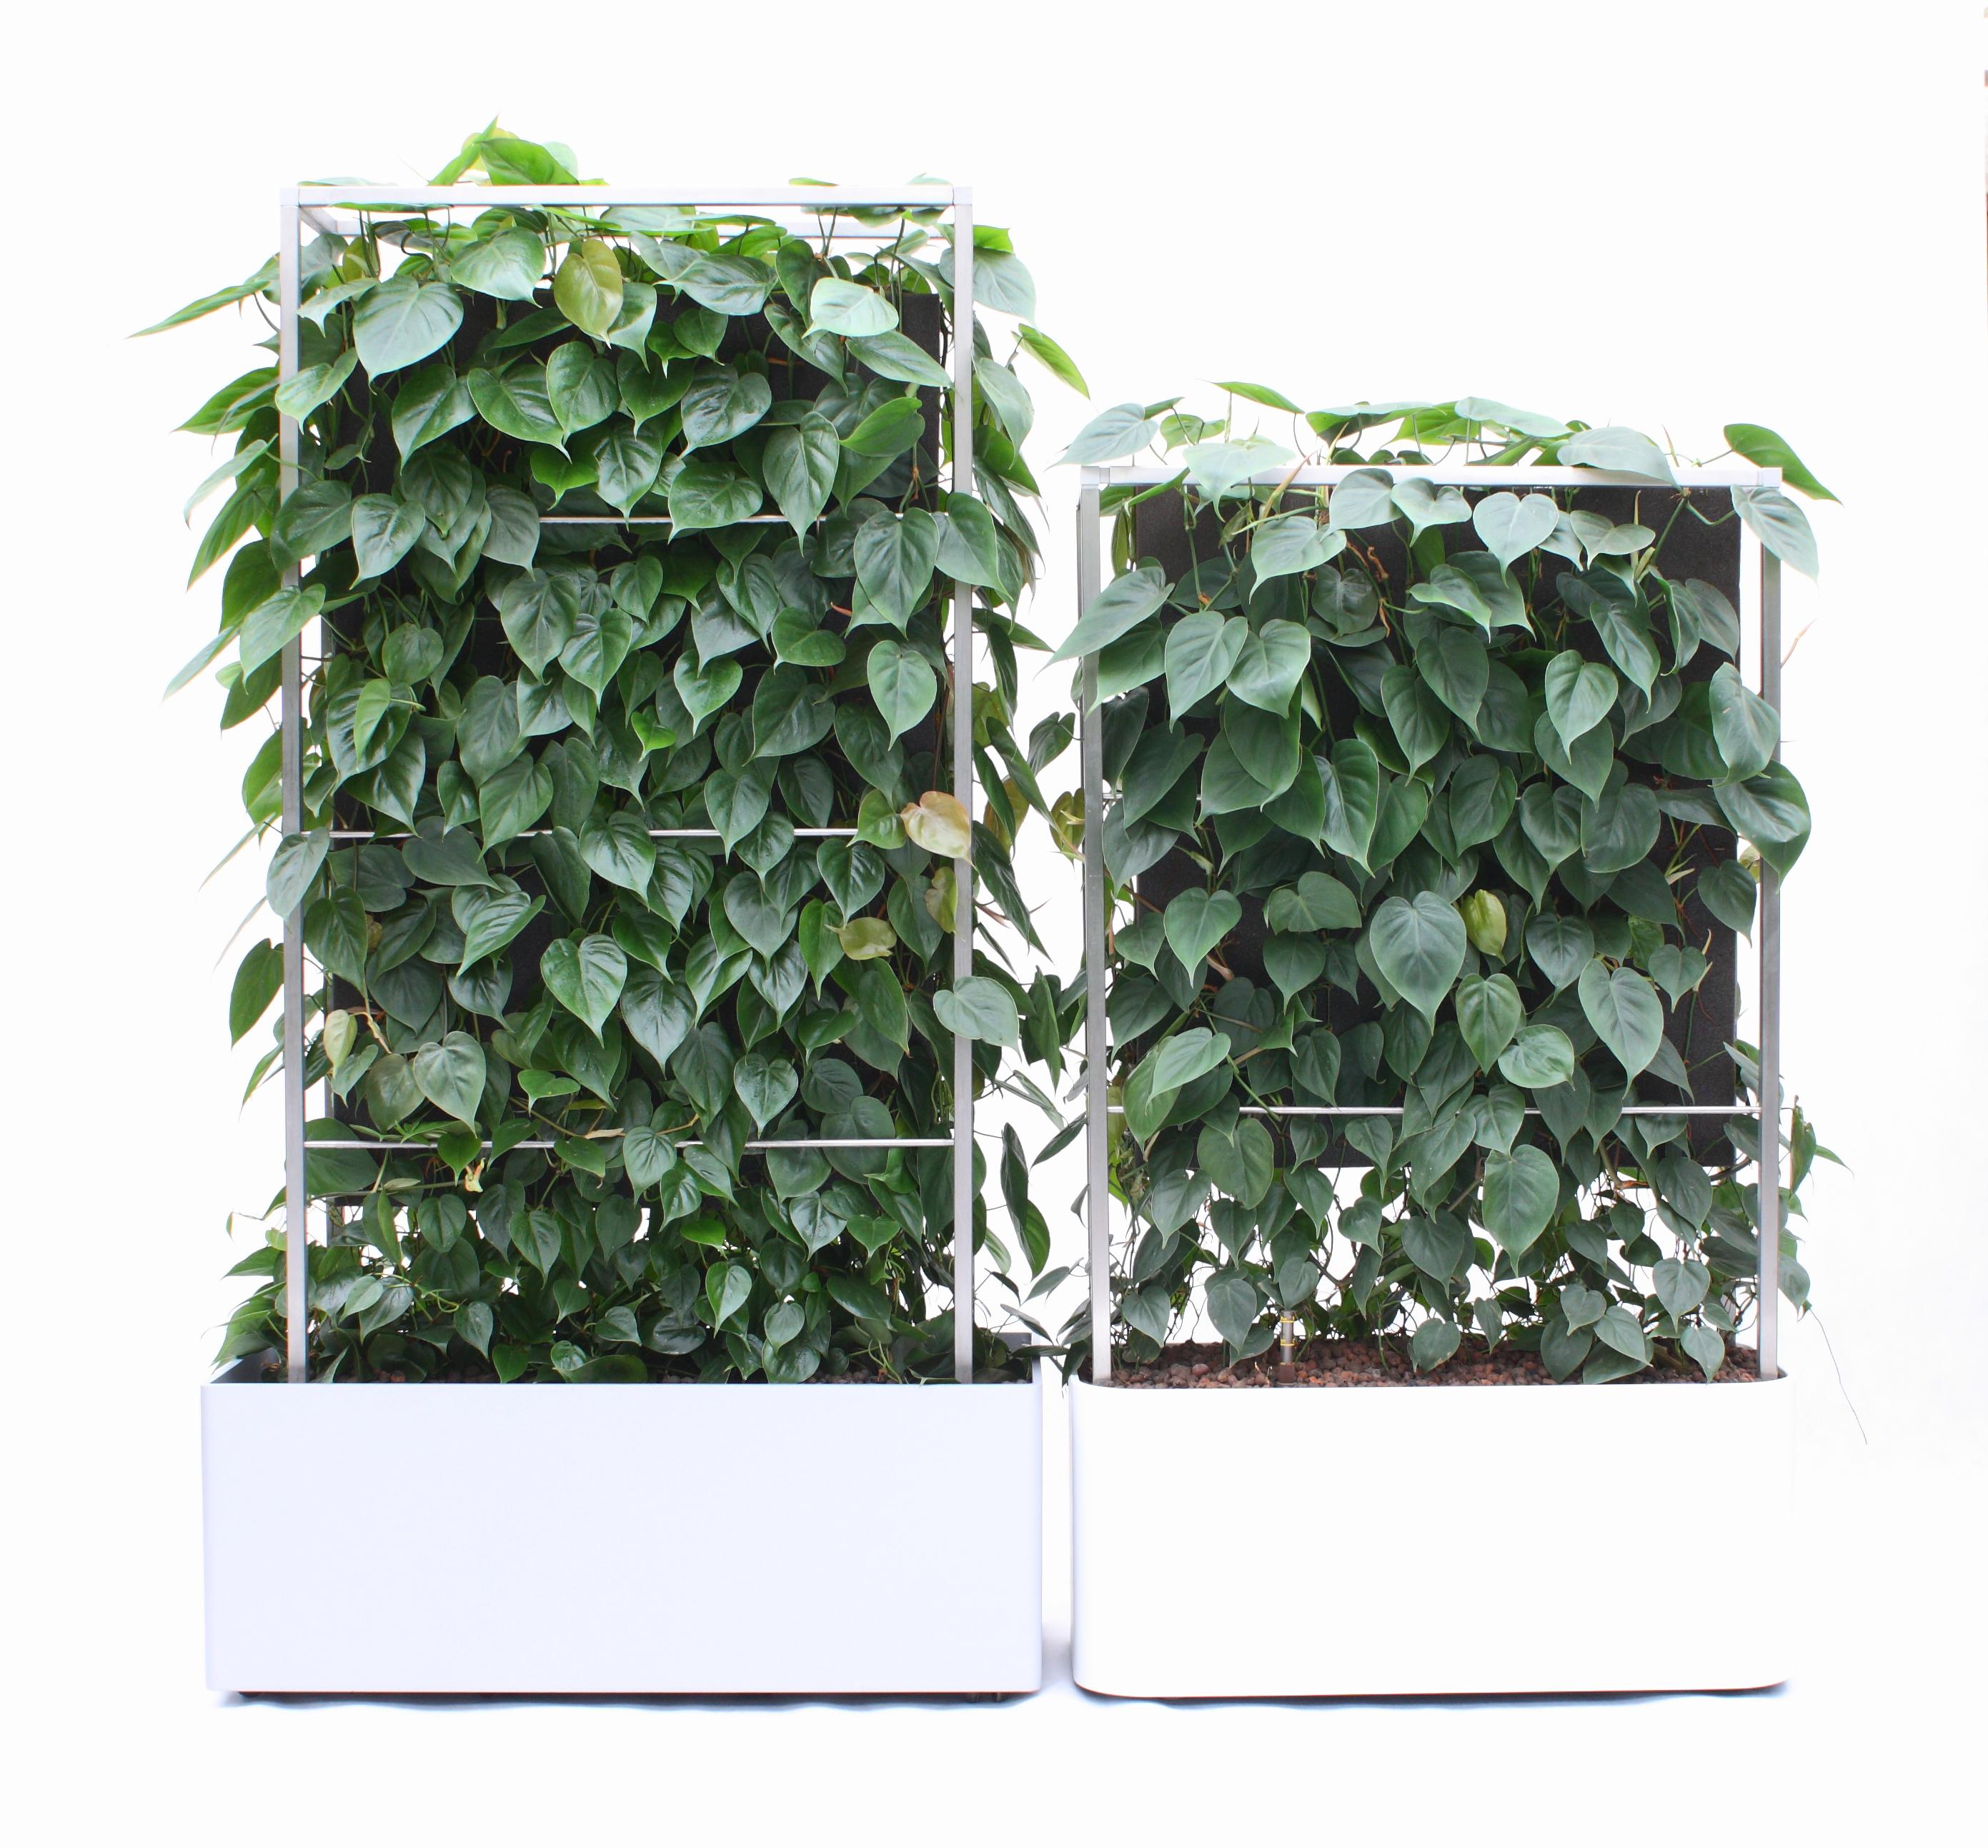 Pflanzen-Paravent / Mobiler Raumteiler #paravent #sichtschutz #sitzecke #raumteiler #schallschutz ©Kremkau Raumbegrünung